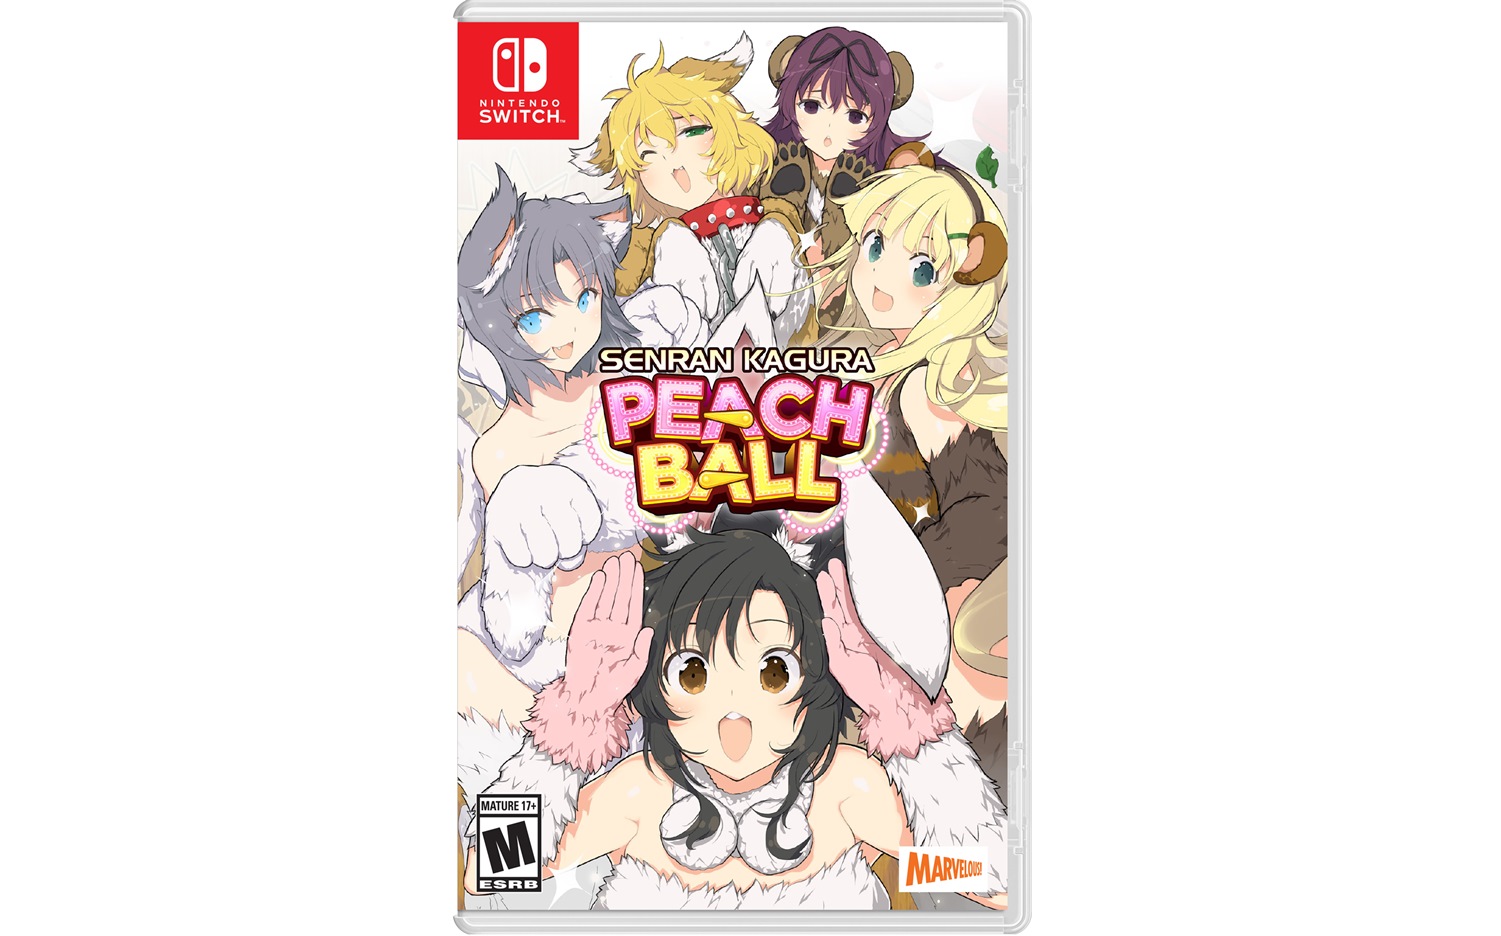 Senran Kagura Peach Ball launches July 9 in North America